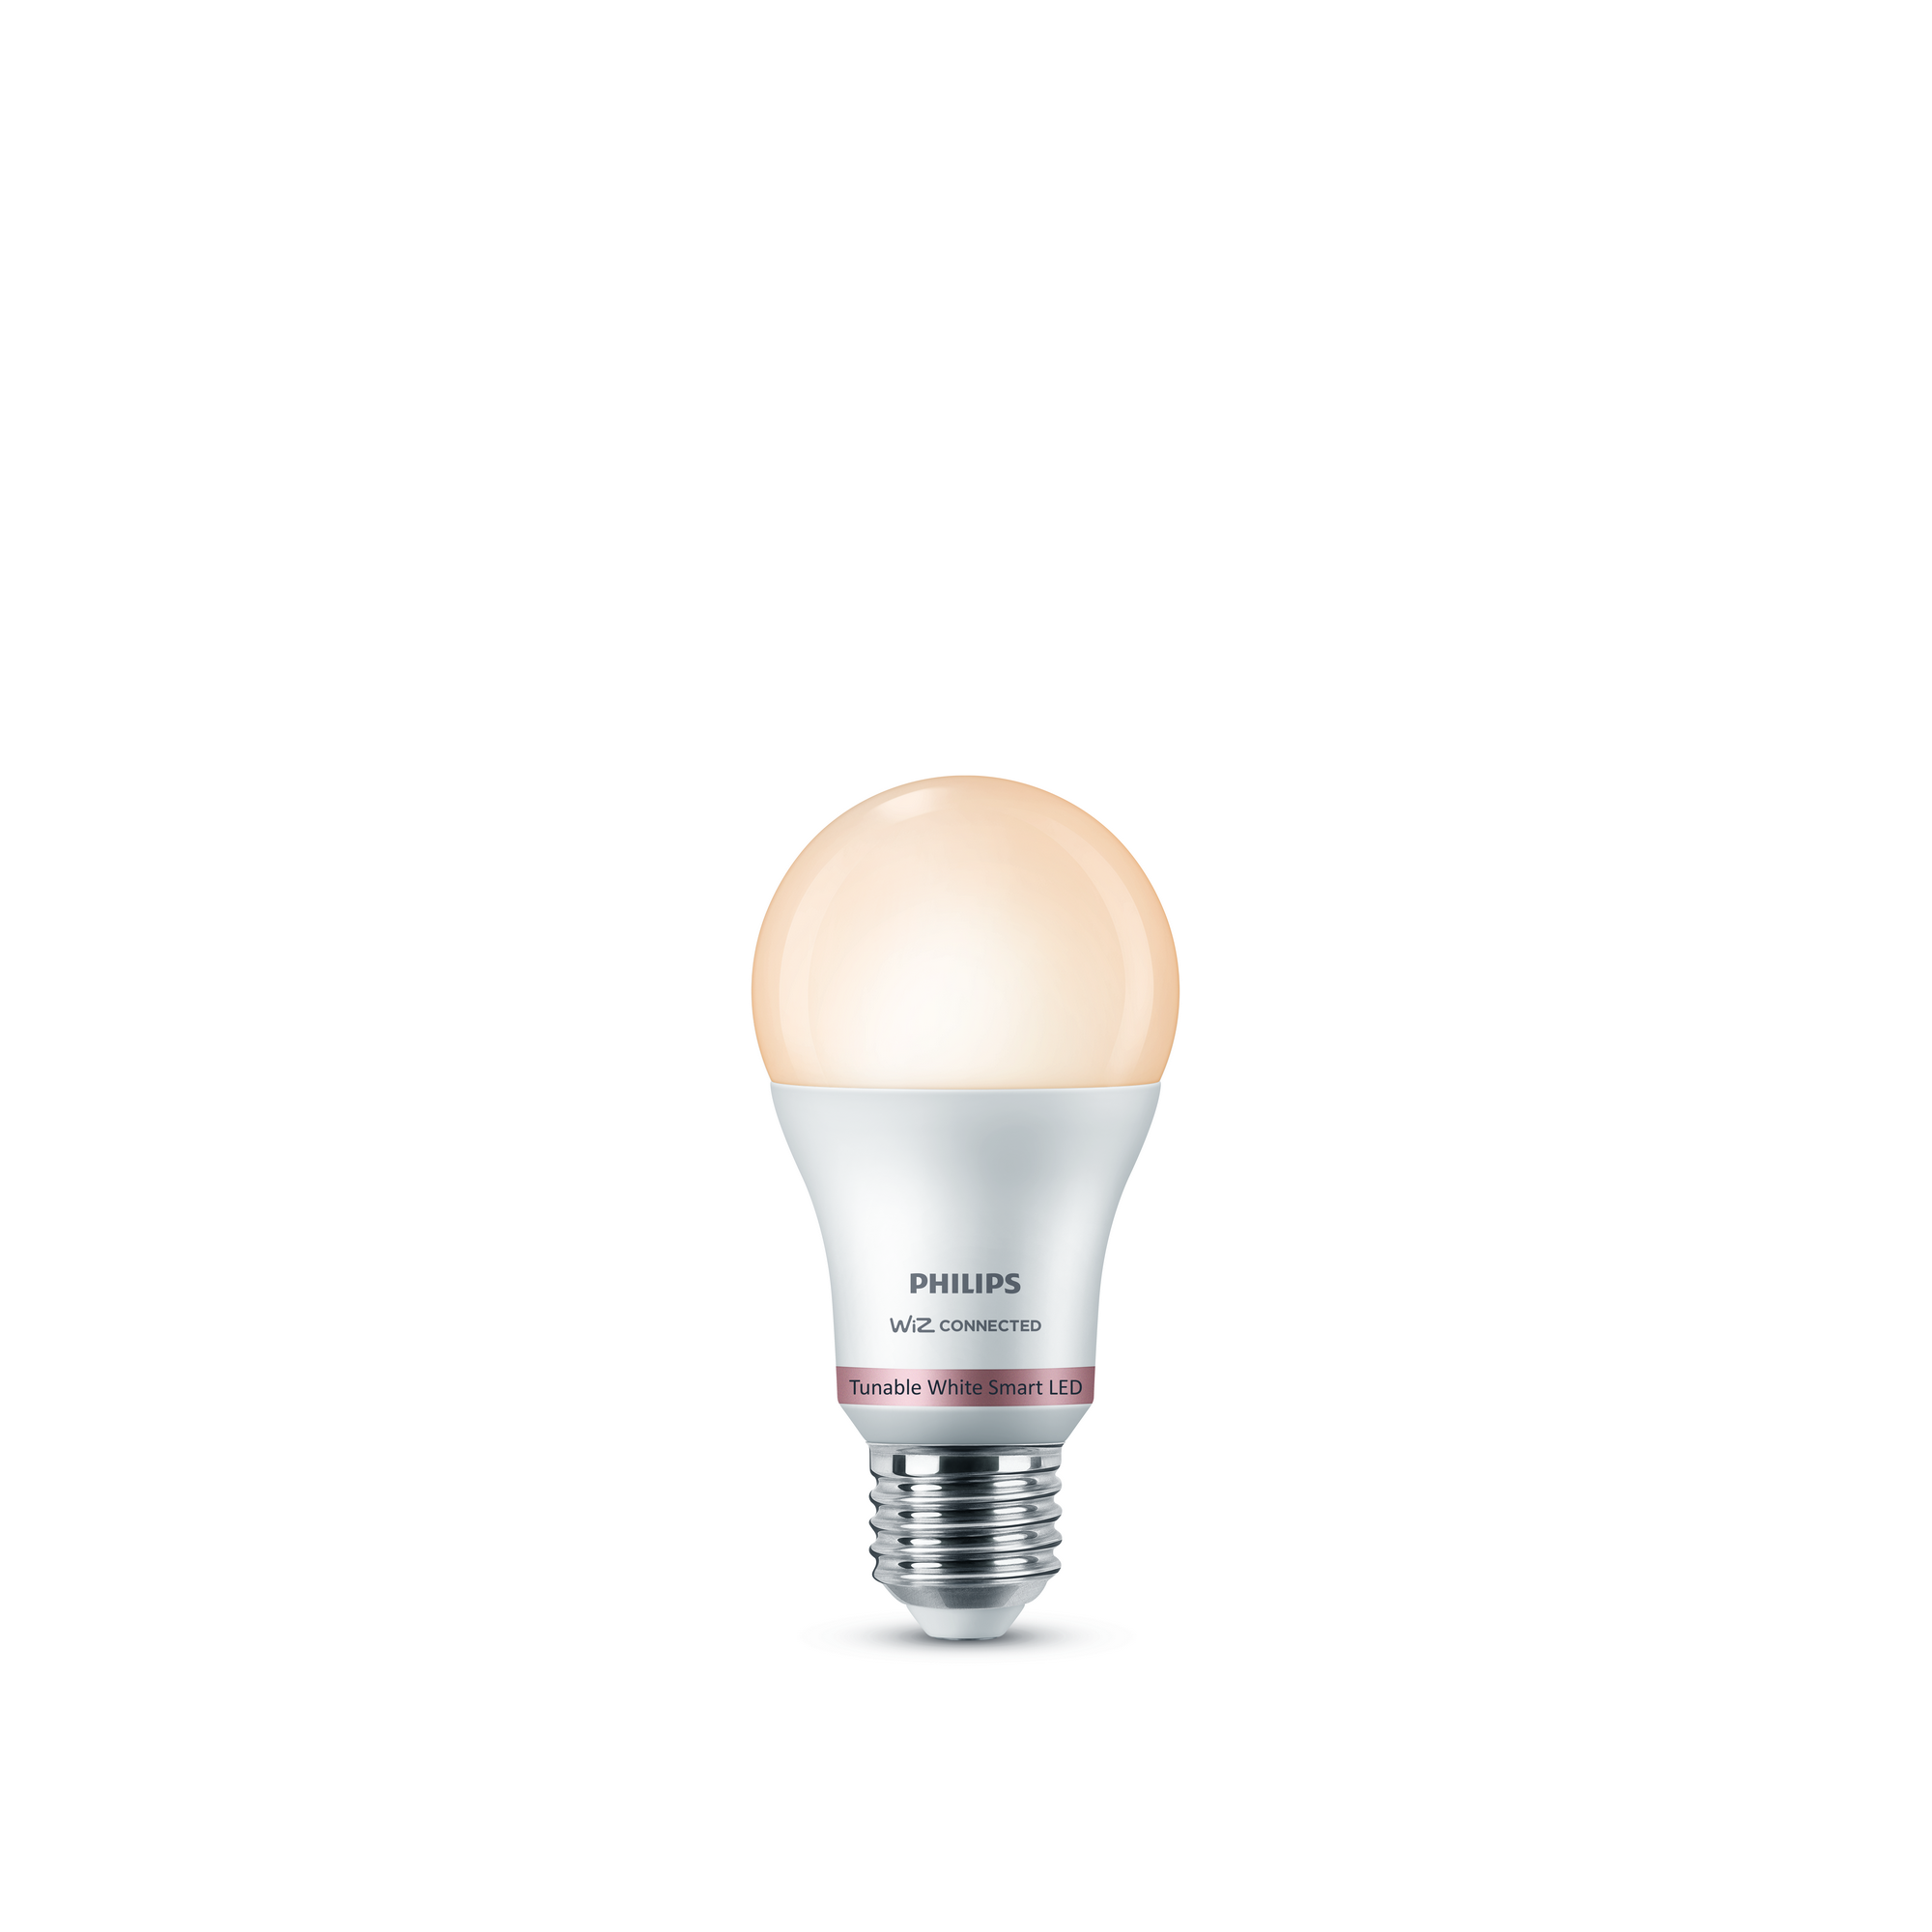 LED-Lampe \'SmartLED\' 806 lm E27 Glühlampe weiß 2700-6500 K 8 W